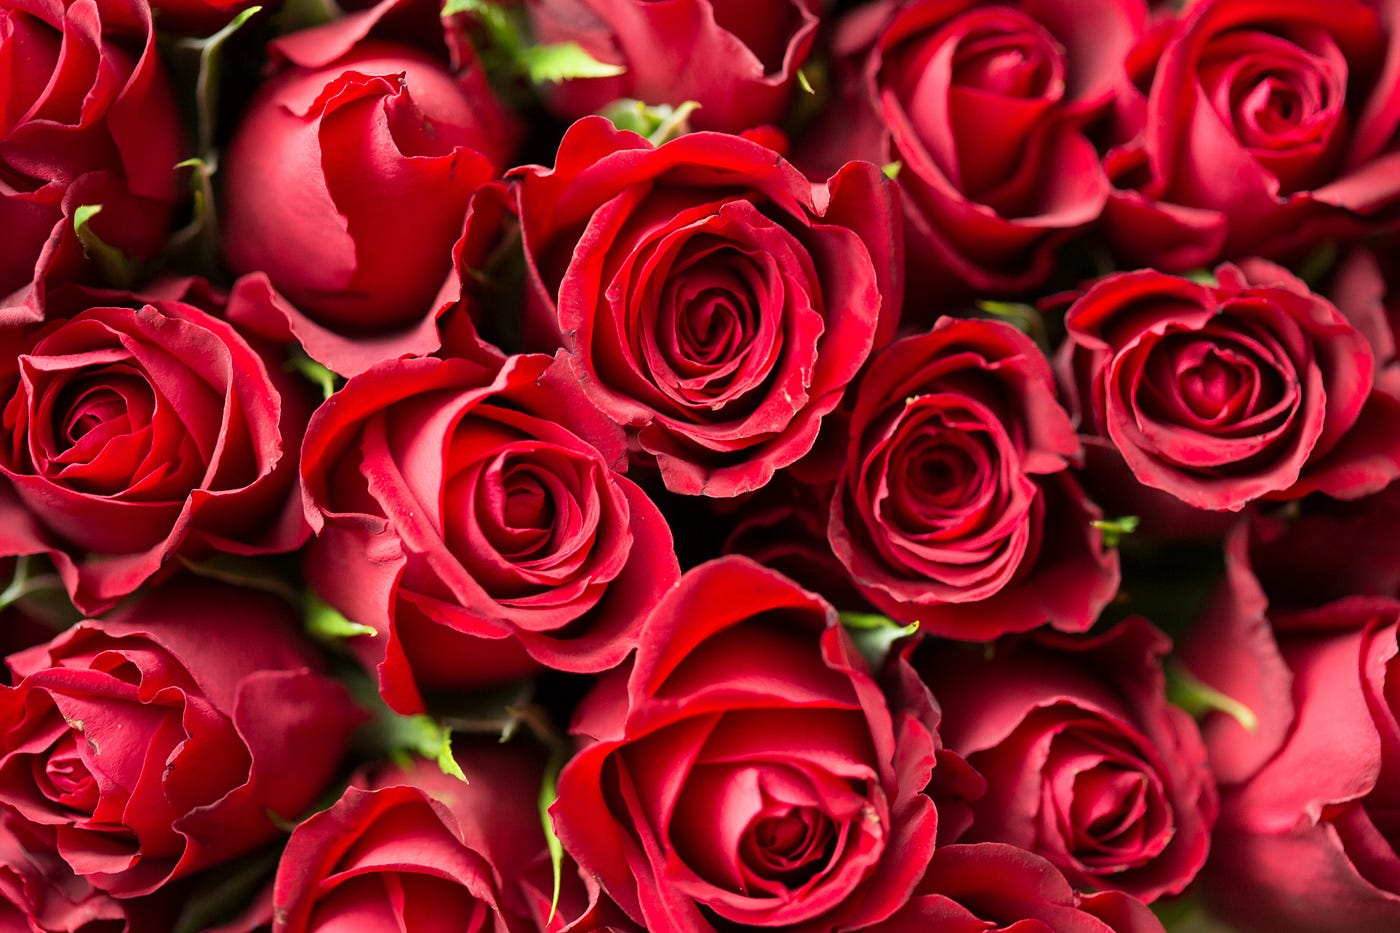 Saint-Valentin : si seulement vous connaissiez le coût réel d'une rose. |  by edeni | edeni stories | Medium